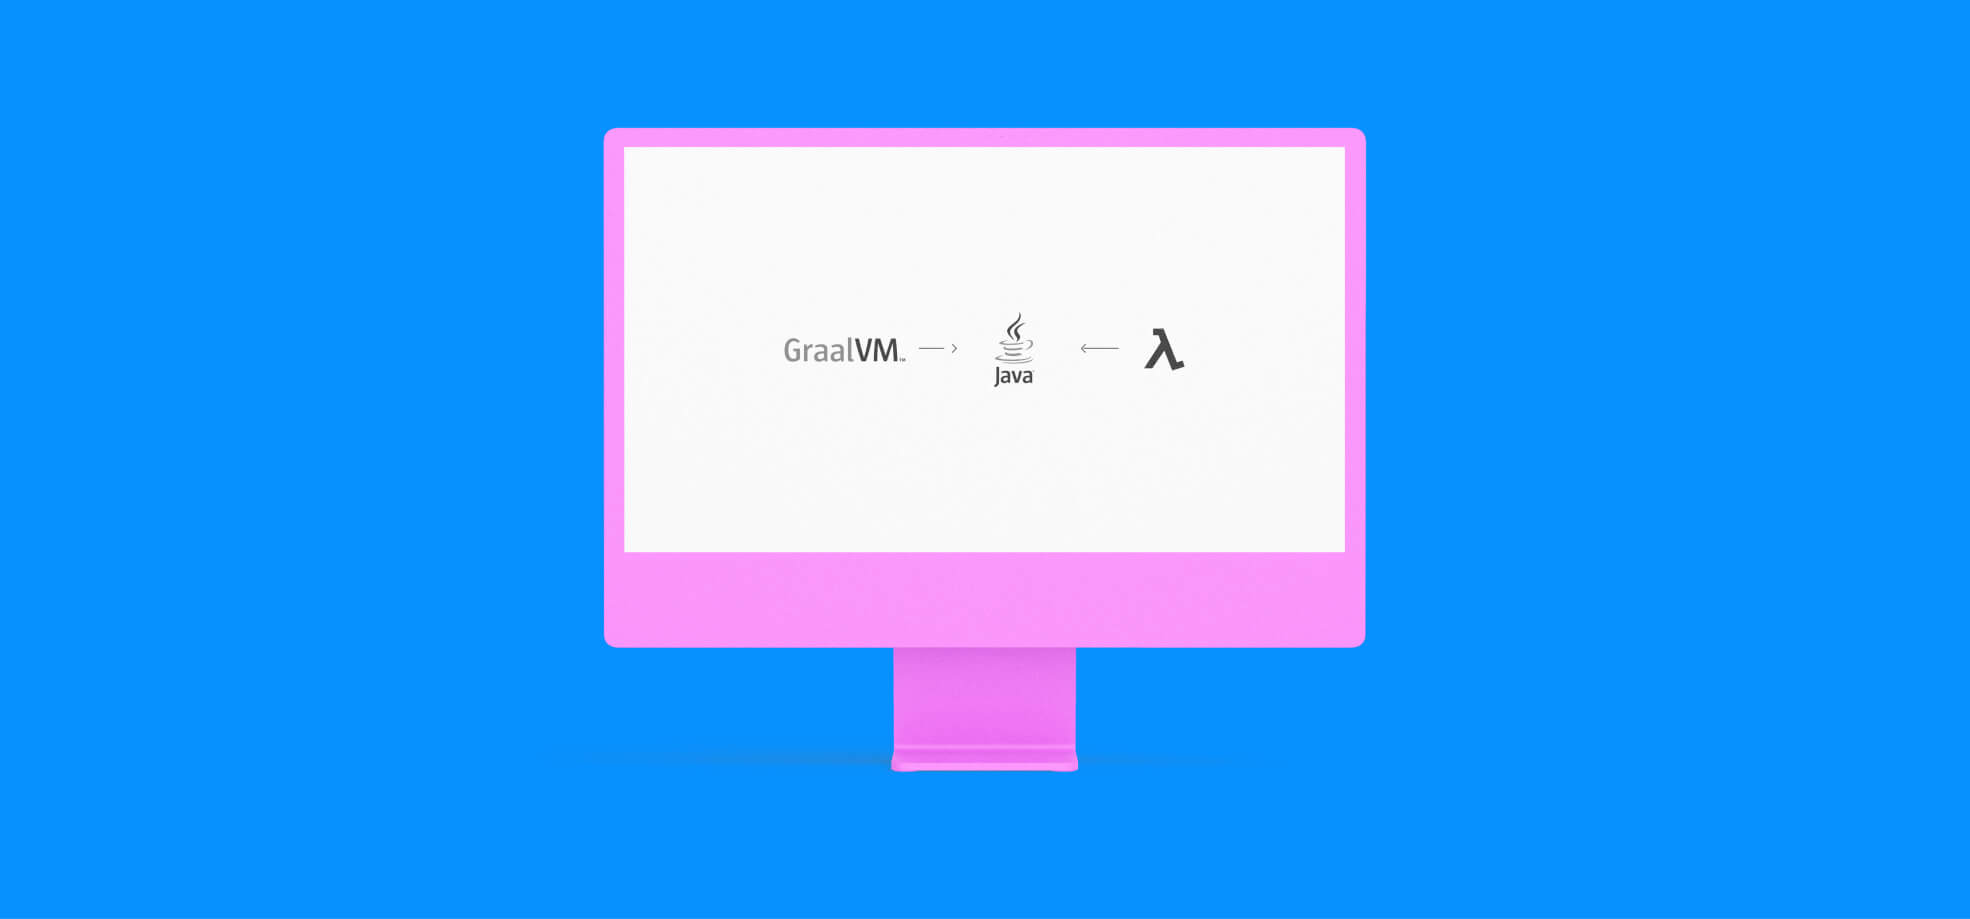 monitor with logos GraalVM, AWS Lambda and Java